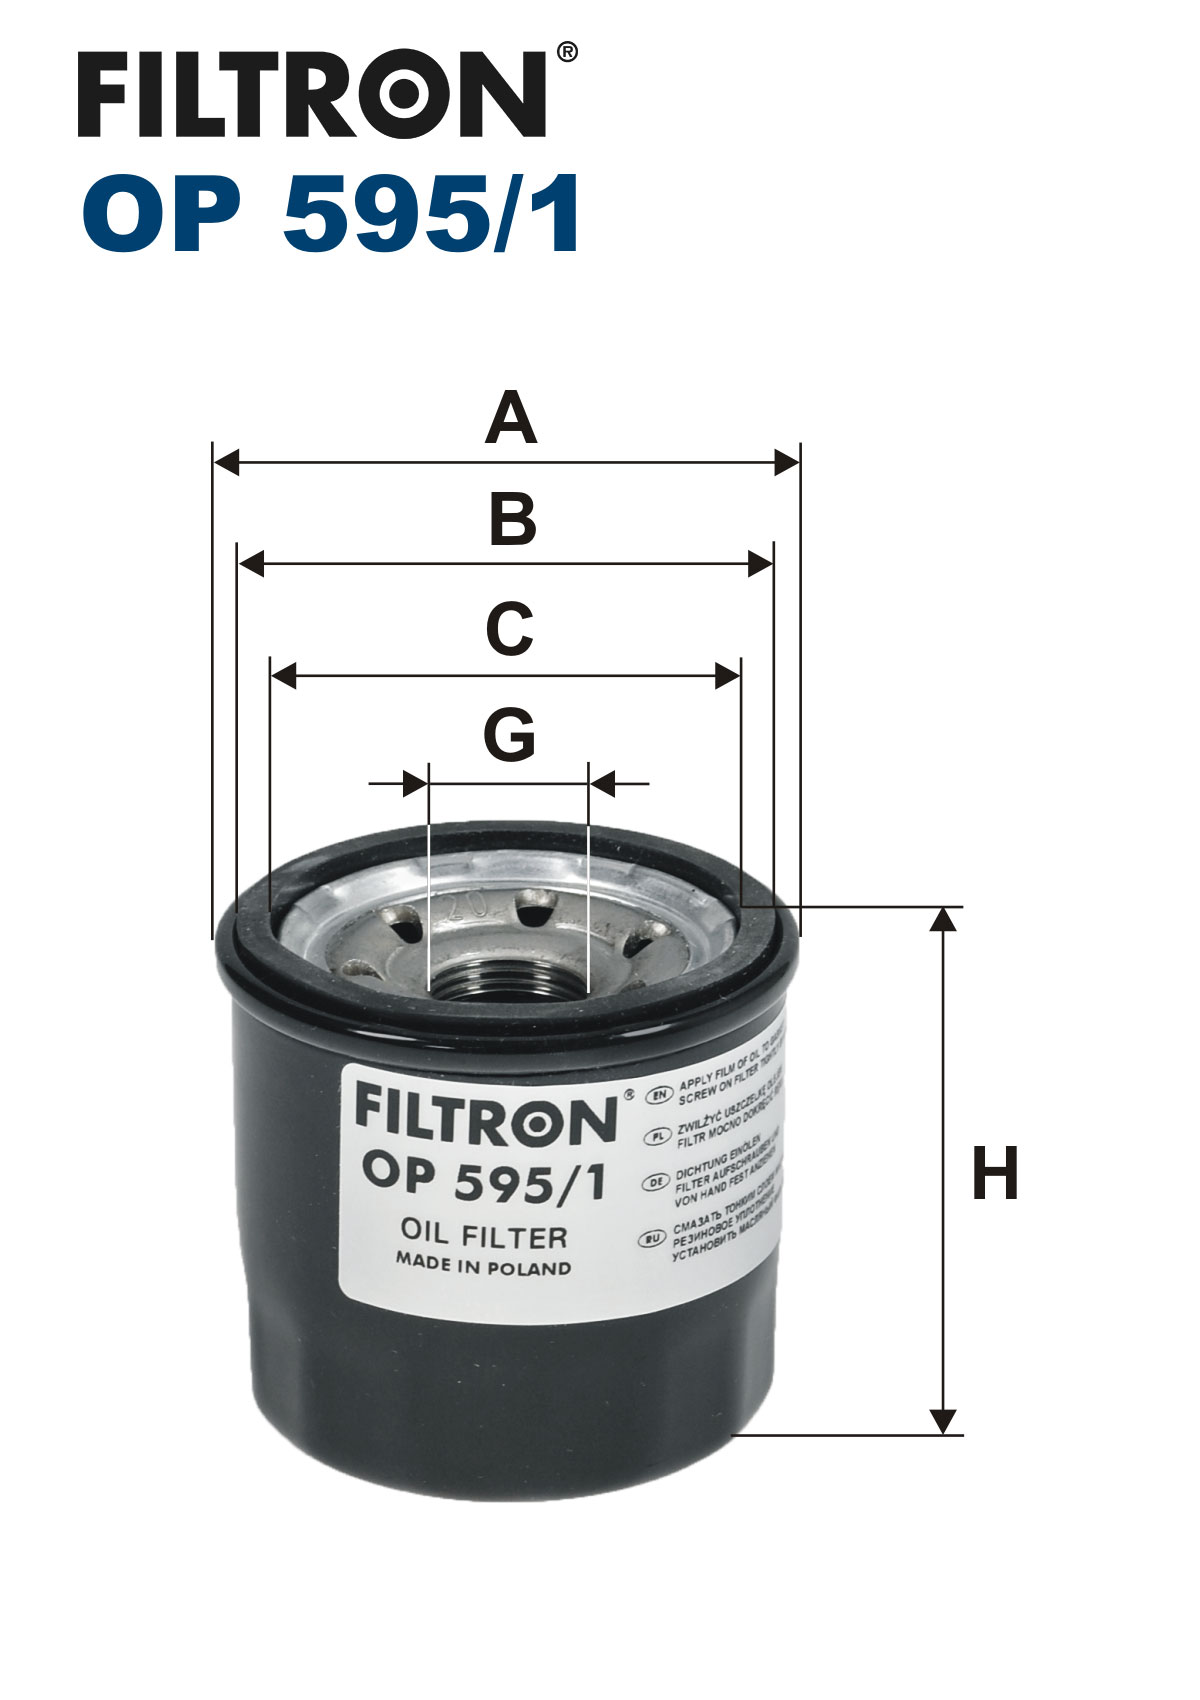 Filtr oleju filtron mazda 3 6 cx5 op595/1 , filtr oleju